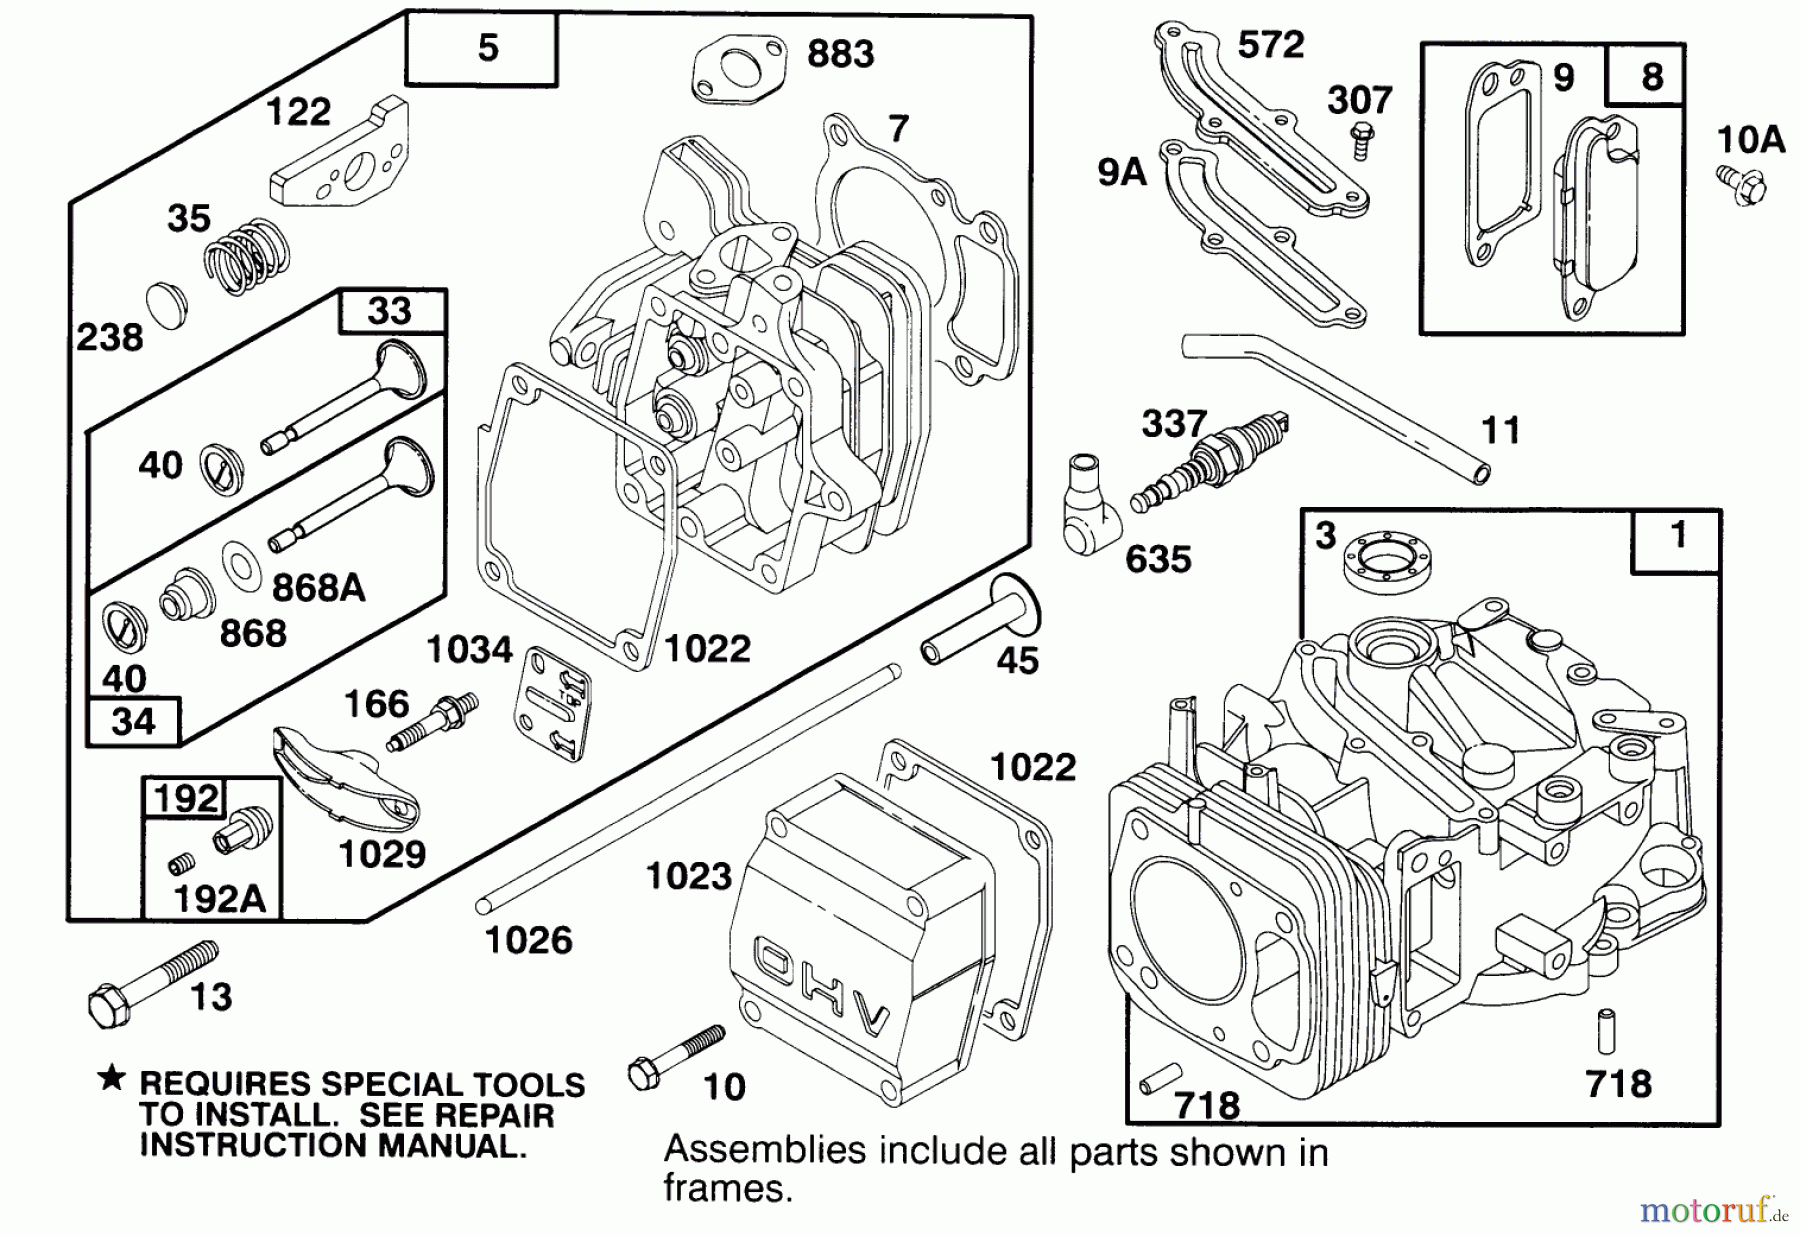  Toro Neu Mowers, Walk-Behind Seite 2 22150 - Toro Lawnmower, 1996 (6900001-6999999) ENGINE GTS 150 #1